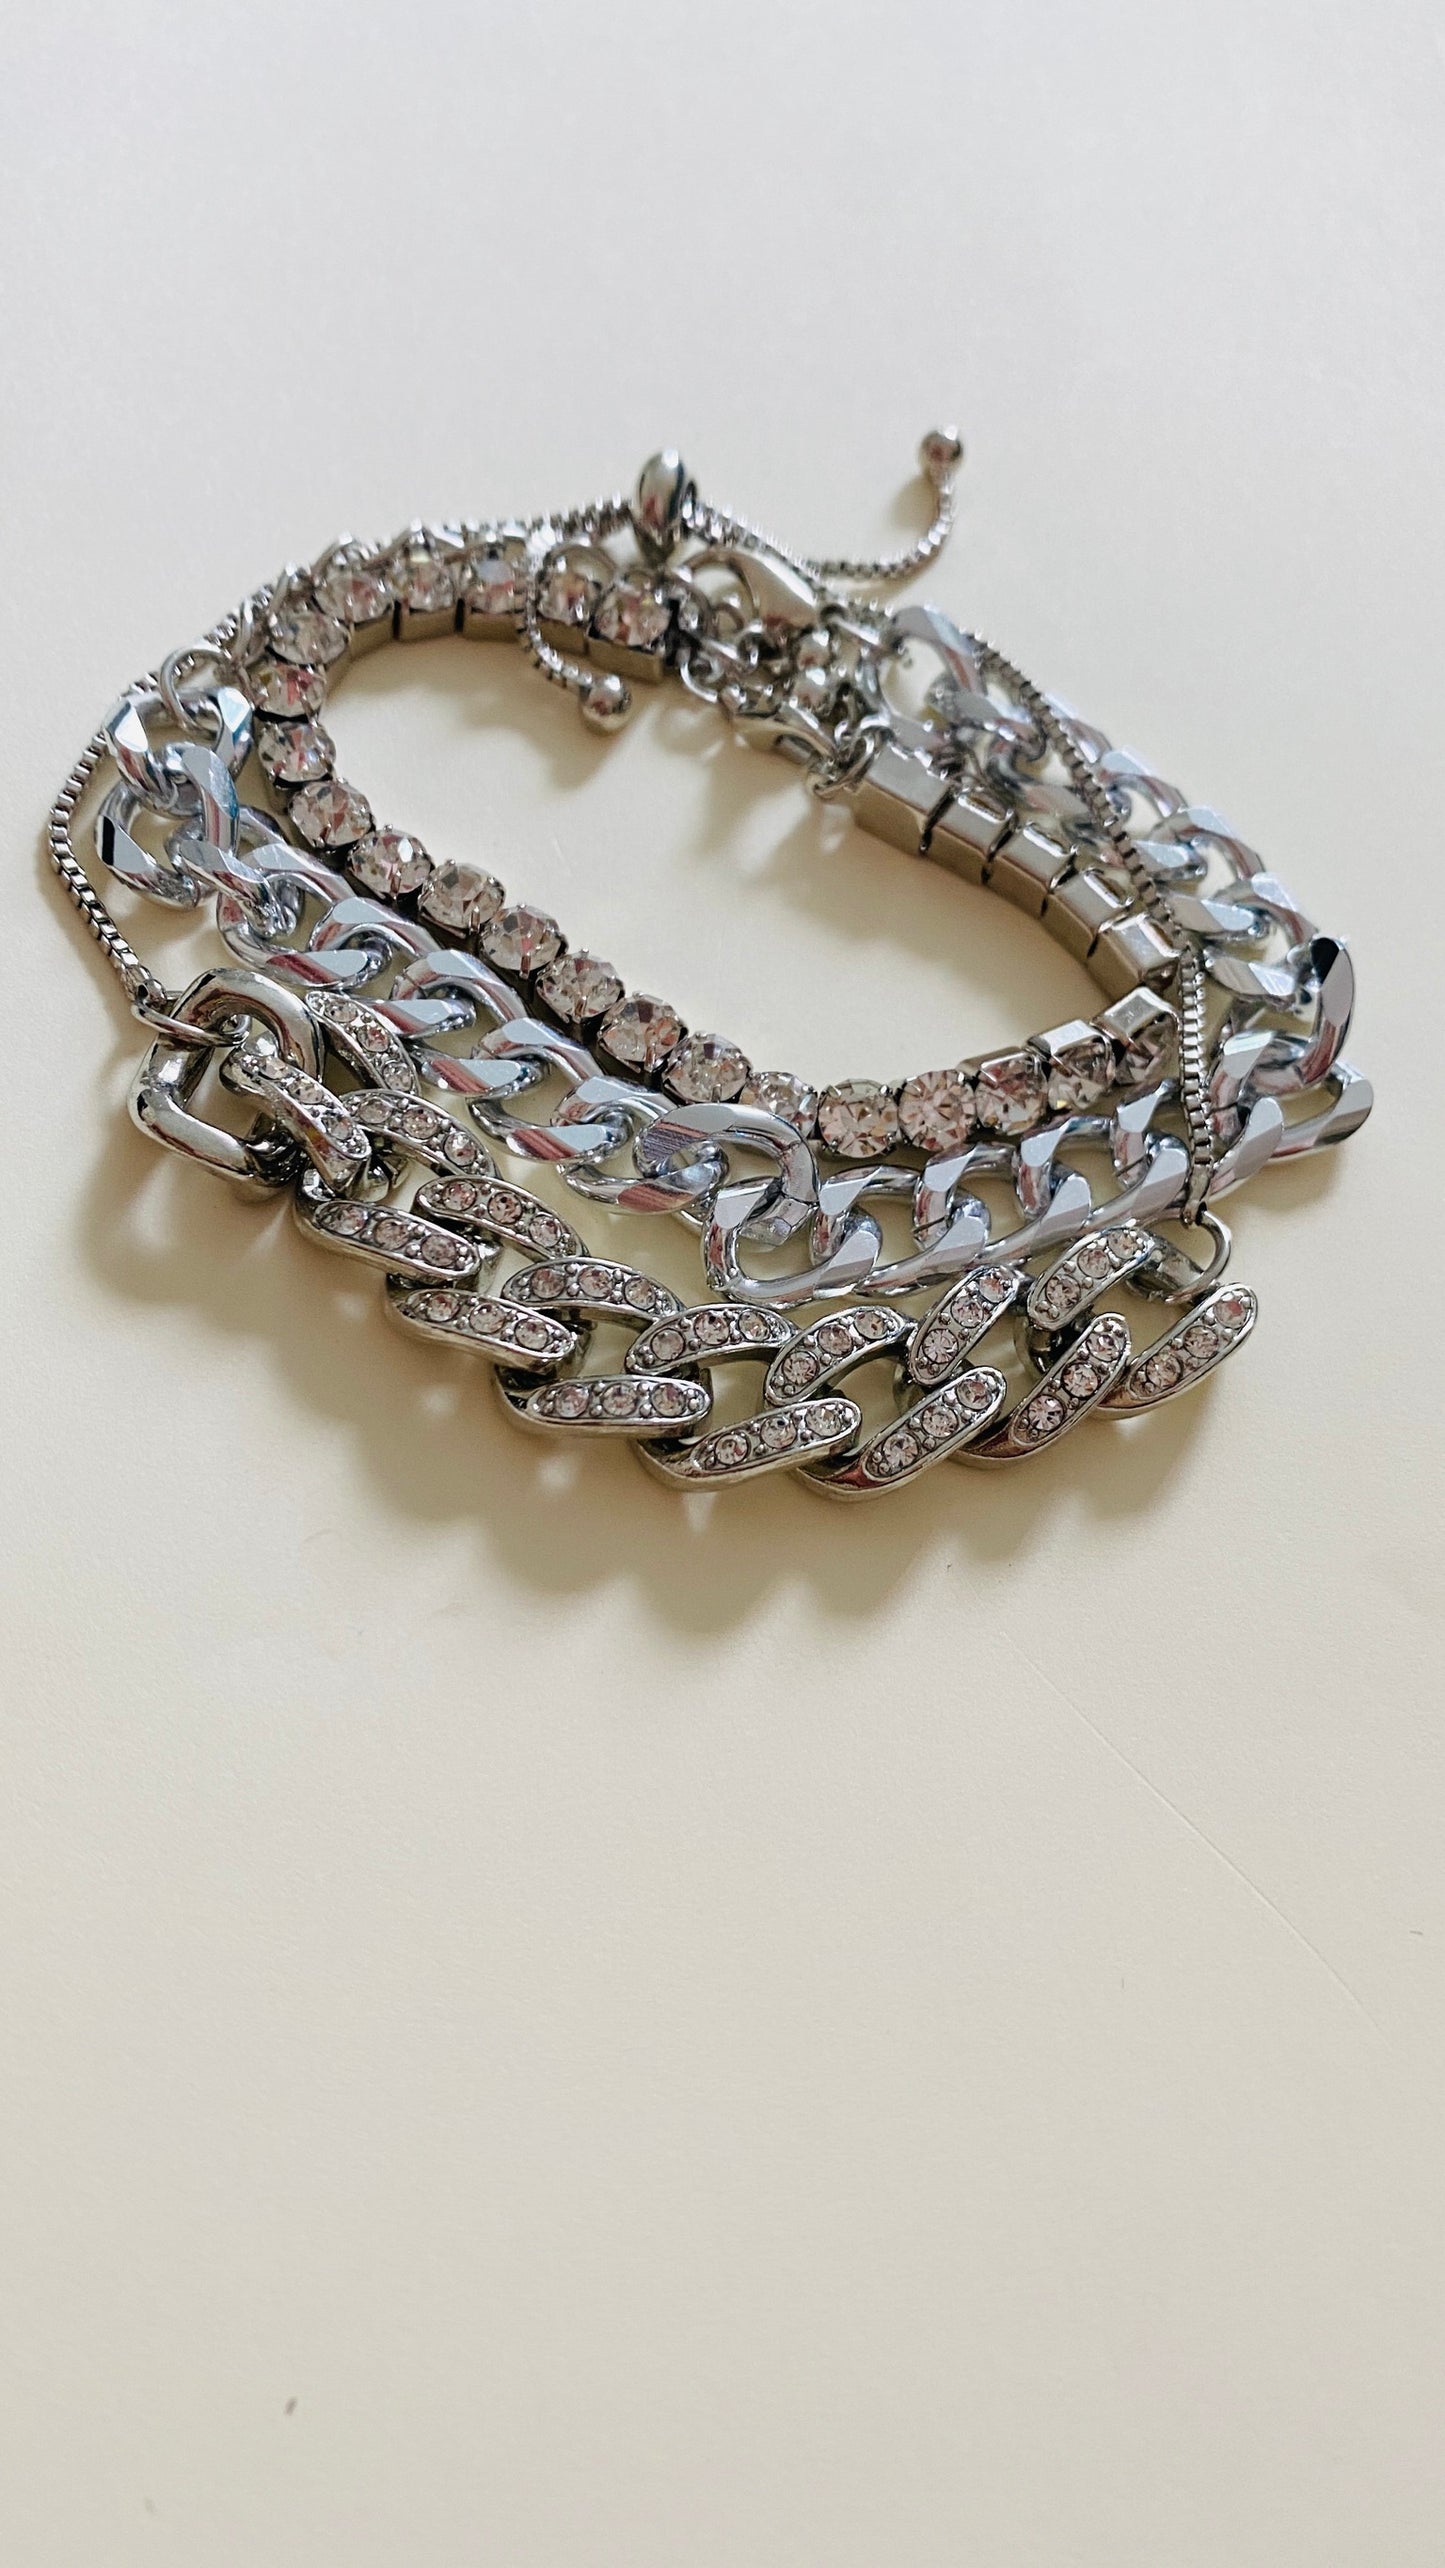 Bohemian Silver Bracelet